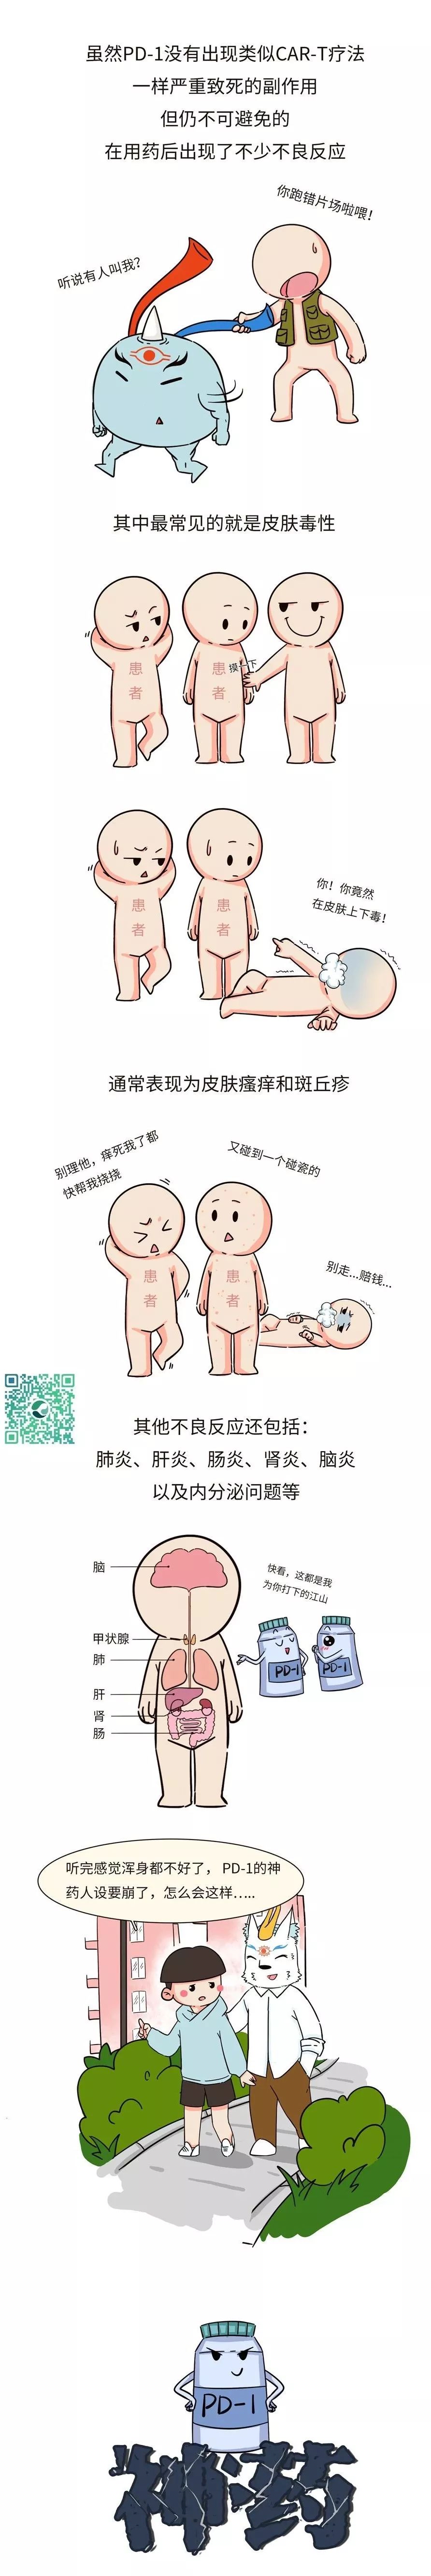 上海细胞治疗工程技术研究中心 自由微信 Freewechat